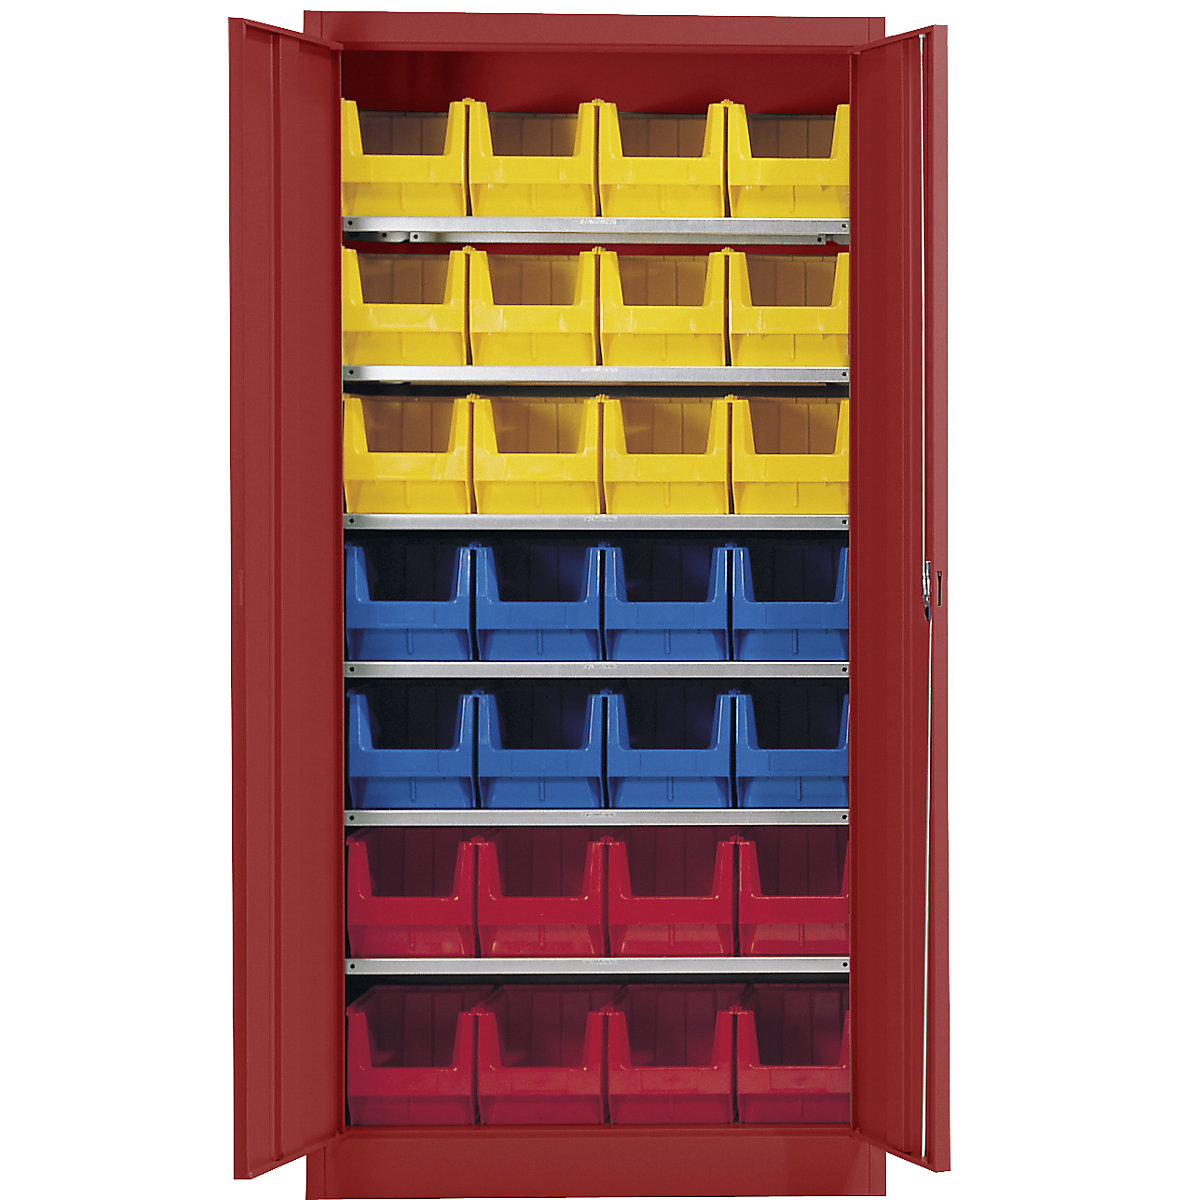 Skladišni ormar, u jednoj boji – mauser, s 28 otvorenih skladišnih kutija, 6 polica, u crvenoj boji, od 3 kom.-2